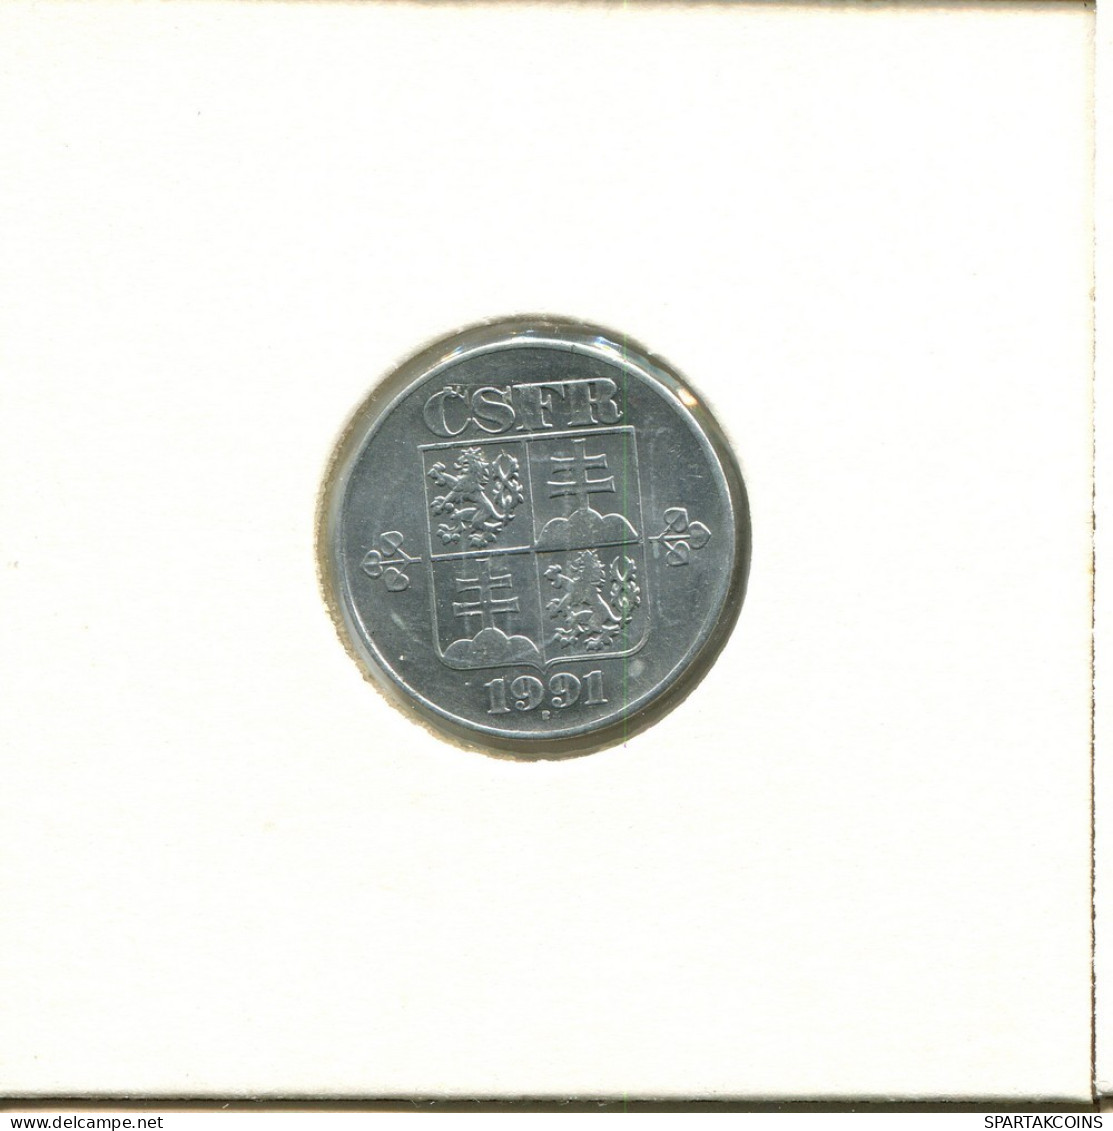 10 HALERU 1991 CHECOSLOVAQUIA CZECHOESLOVAQUIA SLOVAKIA Moneda #AZ937.E.A - Czechoslovakia